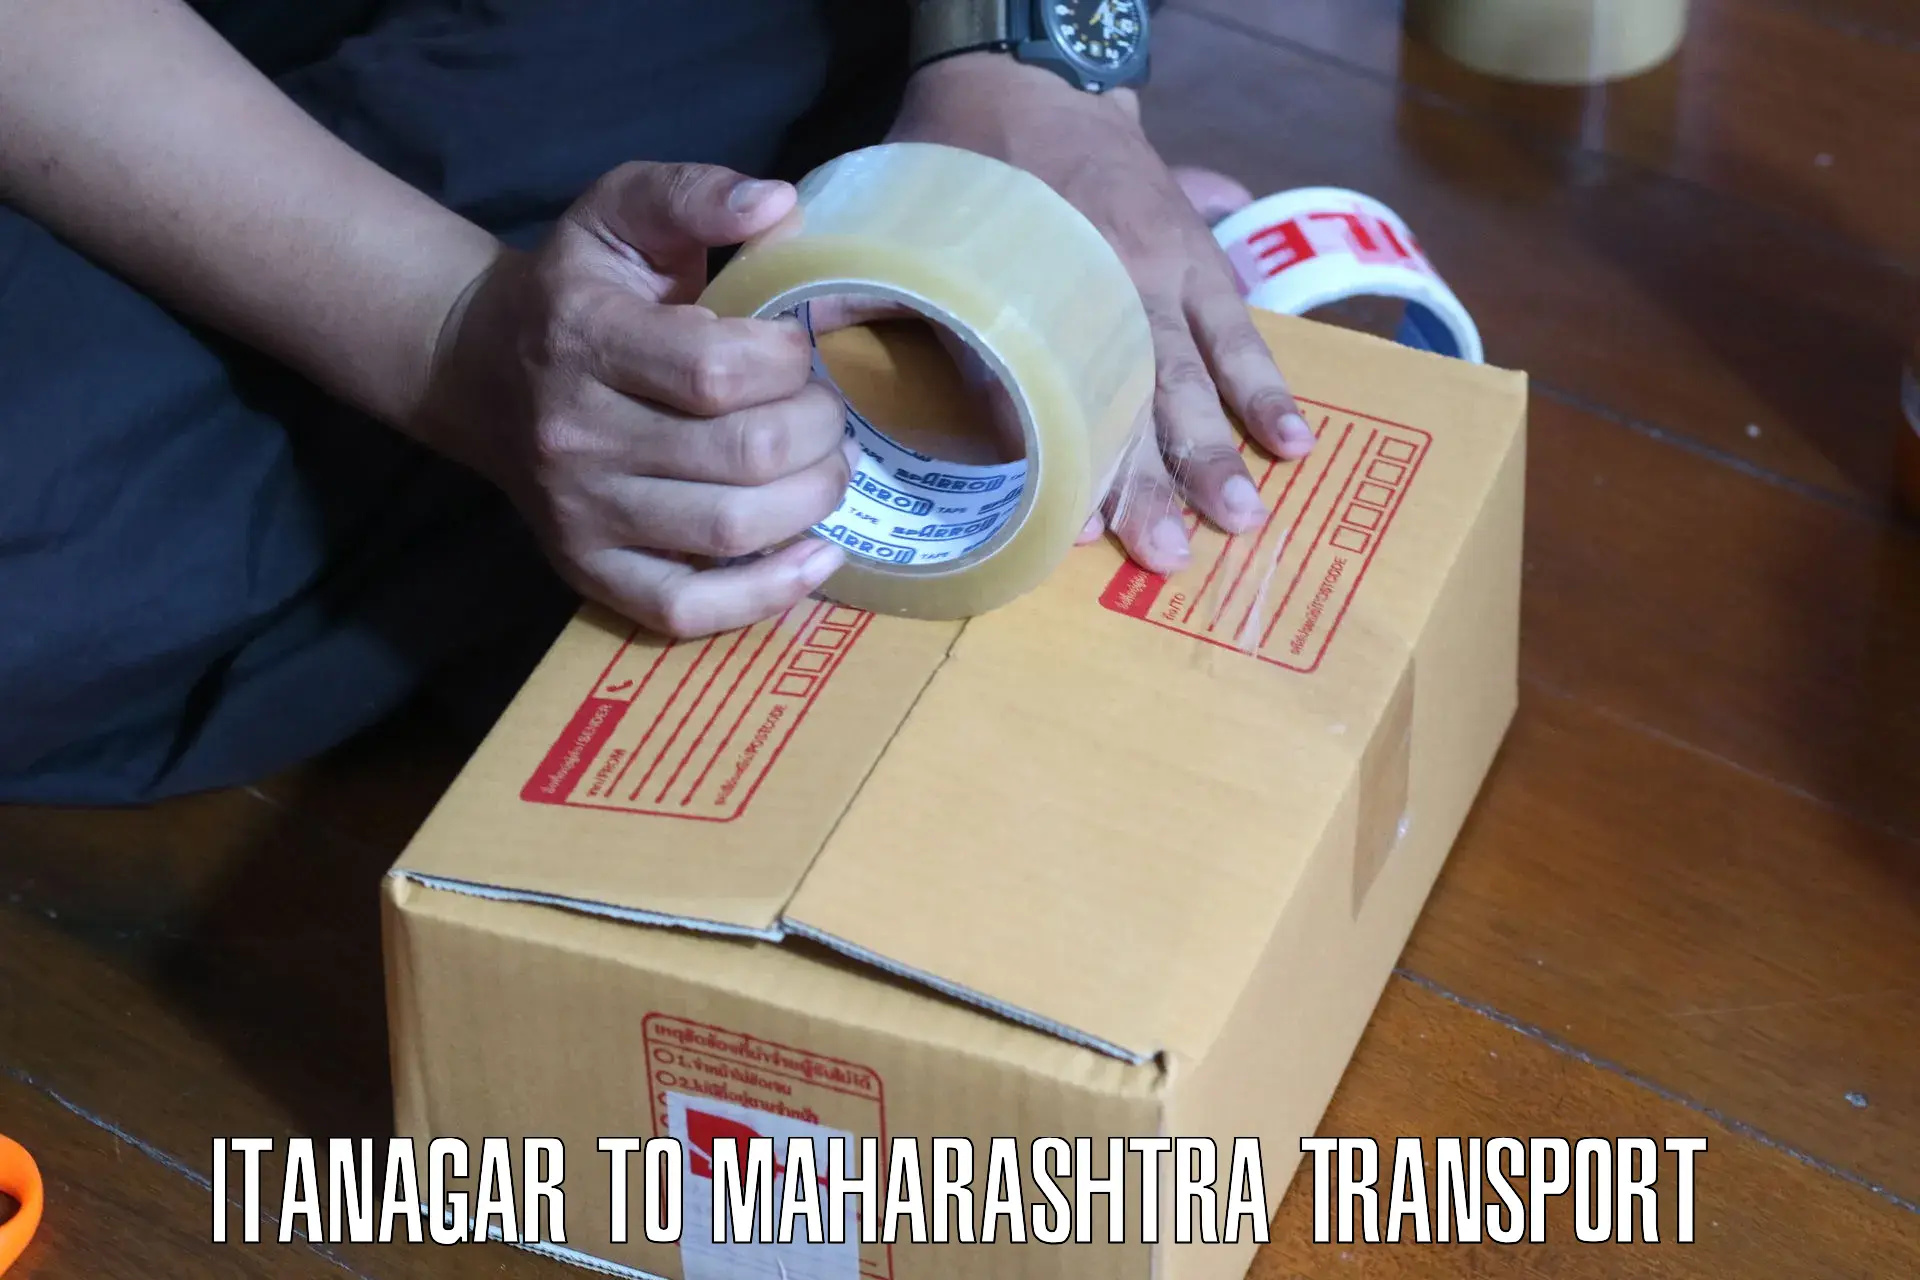 Road transport services Itanagar to Maharashtra